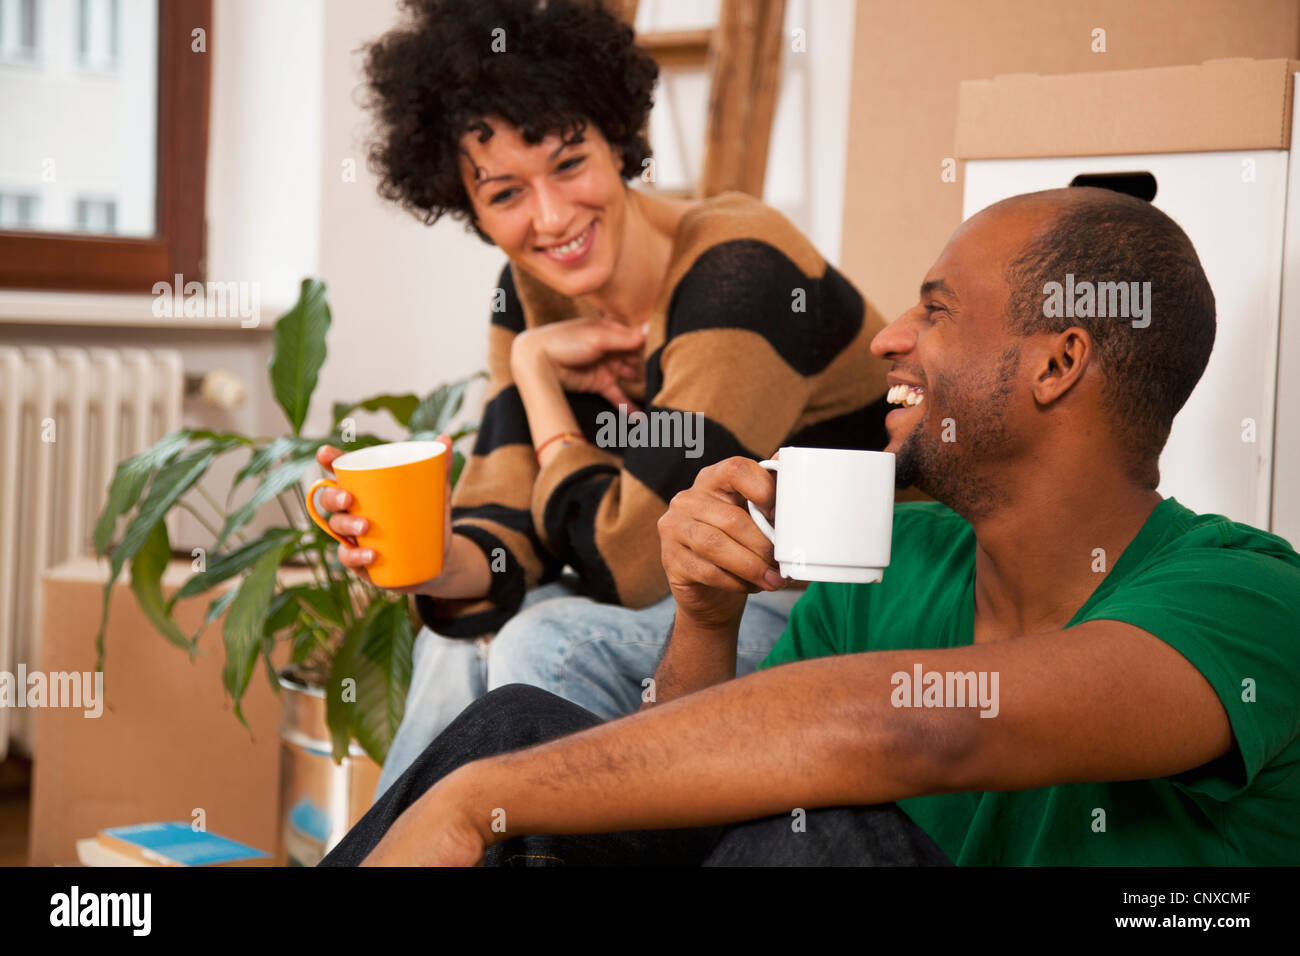 Una ridente giovane prendendo una pausa caffè mentre il trasloco, close-up Foto Stock